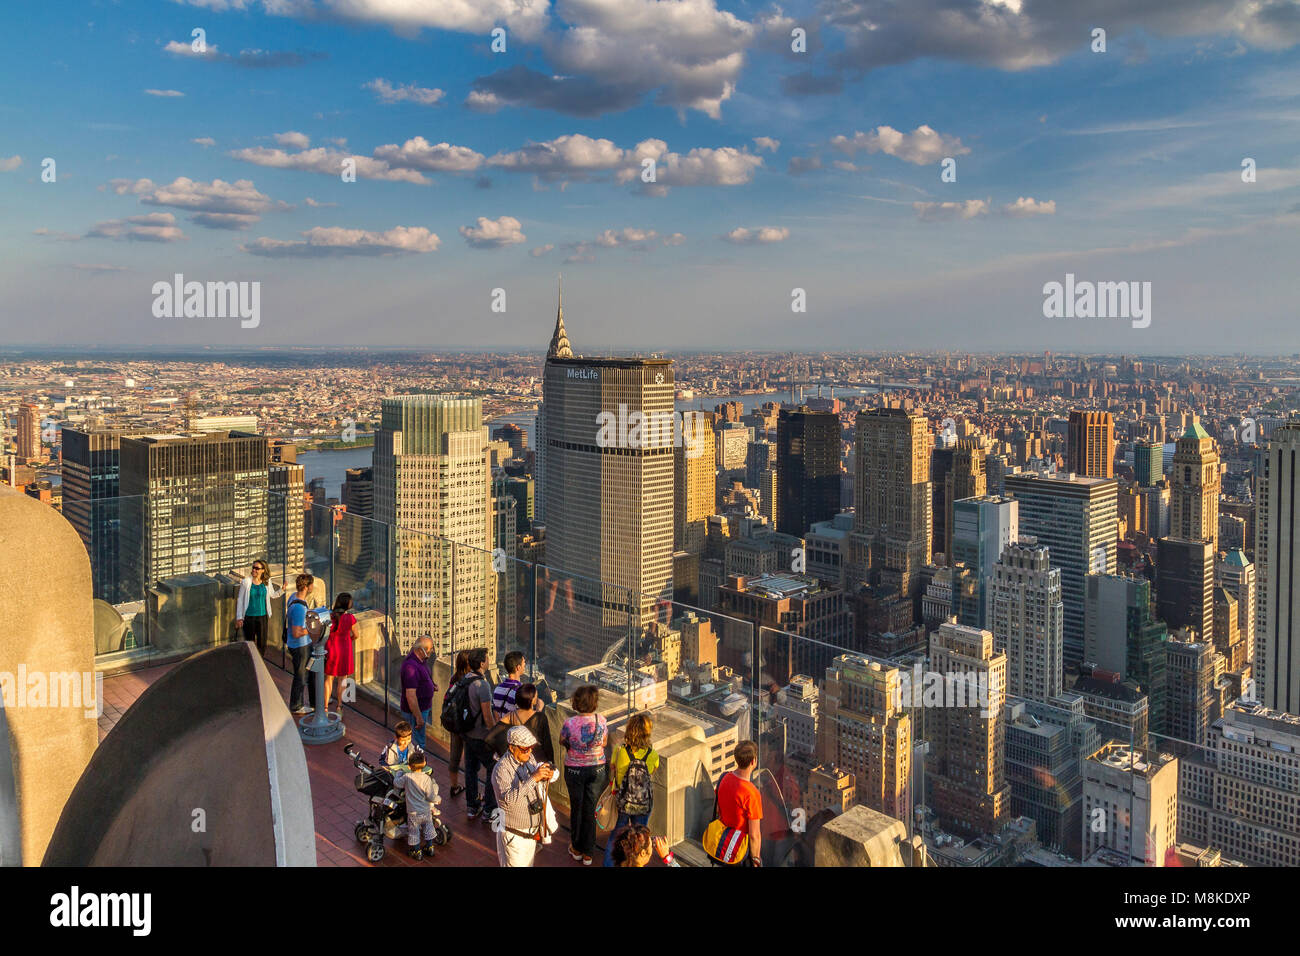 La gente admirando el tejo de Manhattan desde la plataforma de observación Top of the Rock en el techo del edificio Rockefeller Center, Manhattan, Nueva York Foto de stock